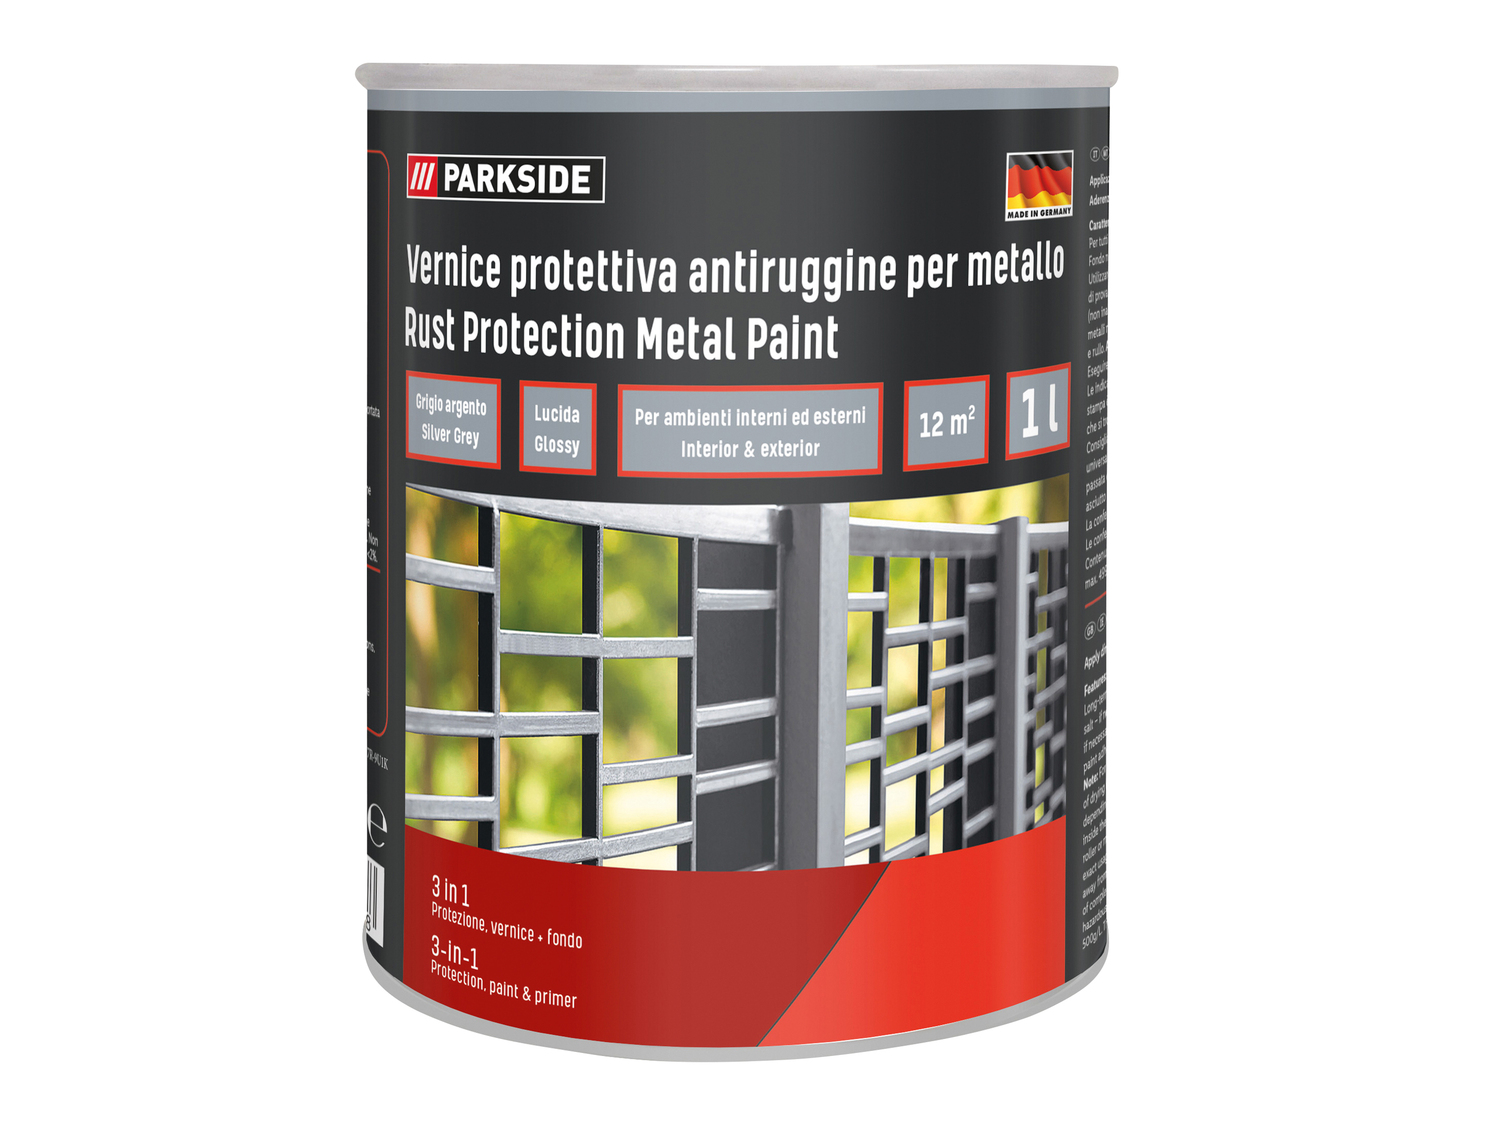 Vernice protettiva antiruggine per metallo Parkside, prezzo 8.99 &#8364; 
1 ...